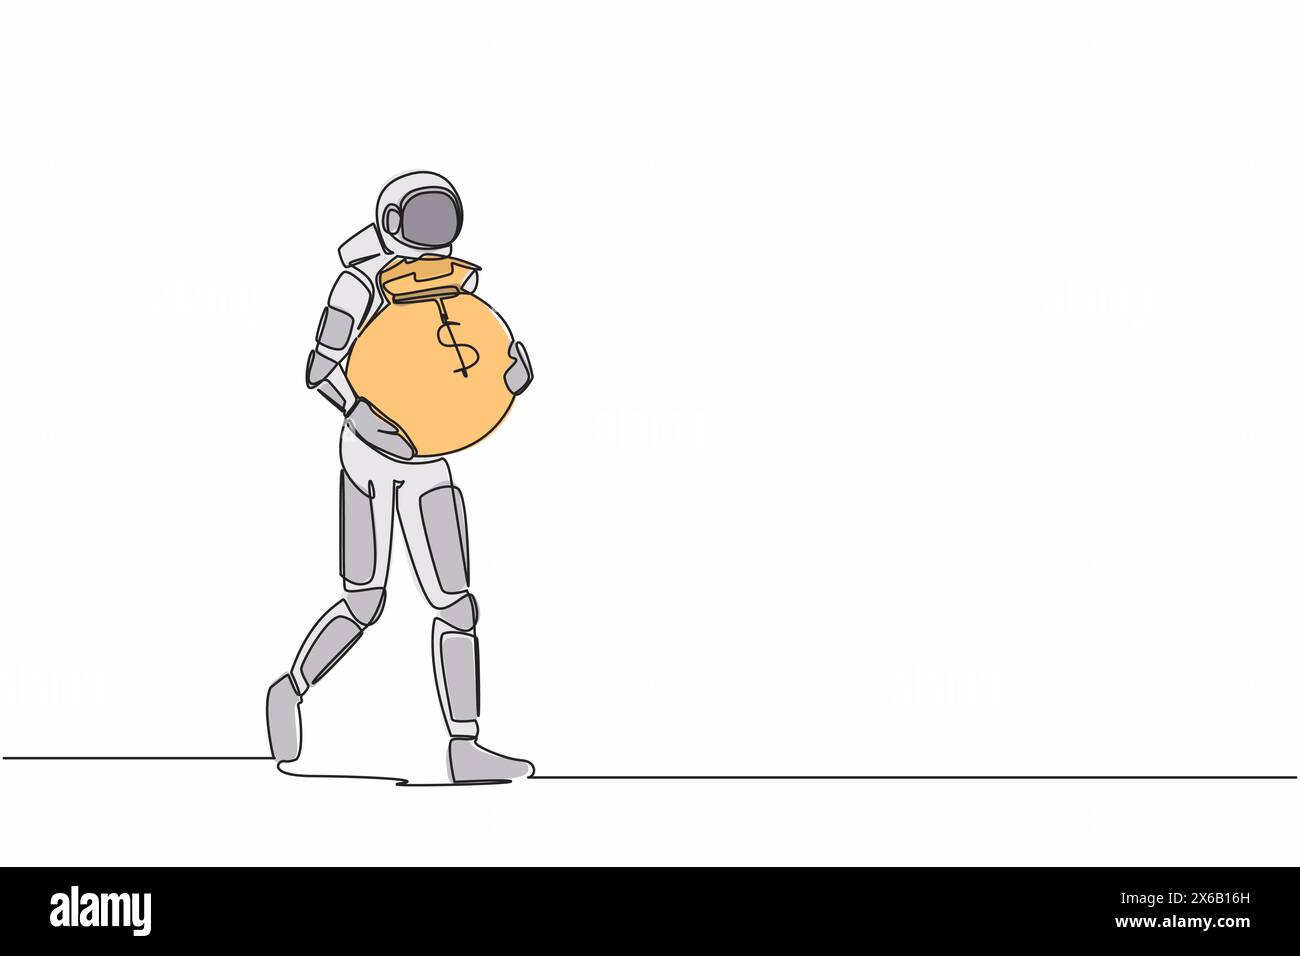 Simple dessin d'une ligne d'astronaute marchant et transportant un lourd sac d'argent. Financement du développement futur des technologies spatiales. Espace galaxique cosmique. Conti Illustration de Vecteur